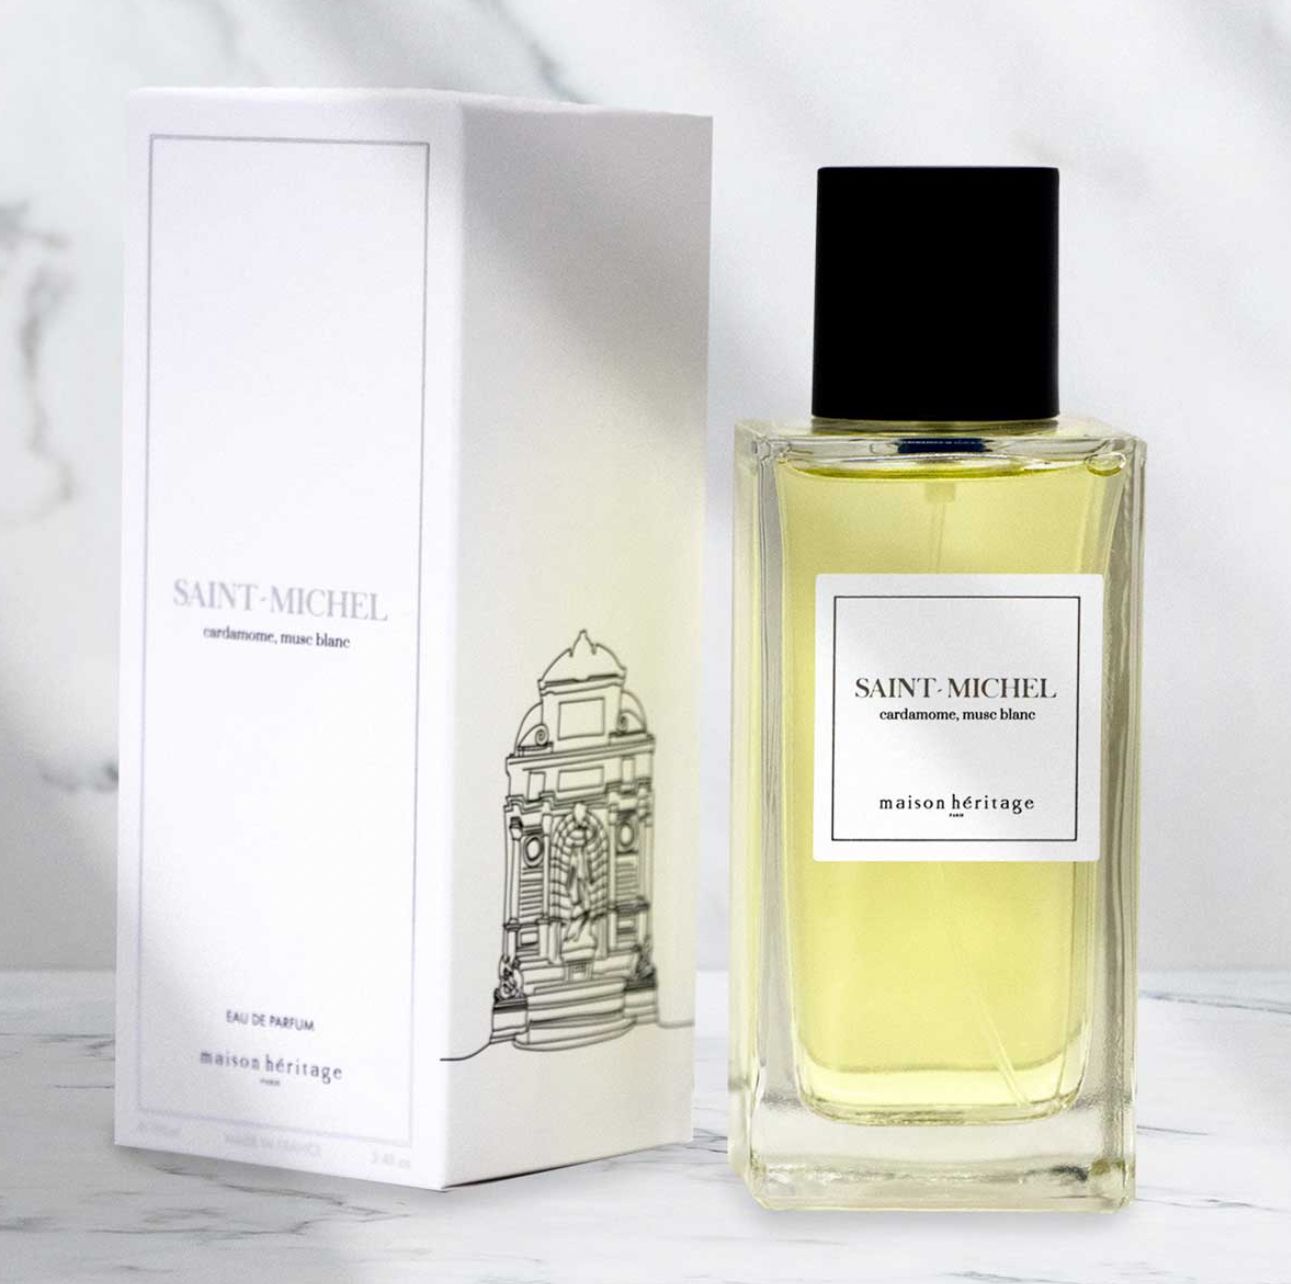 Saint Michel Maison Héritage cologne - a fragrance for men